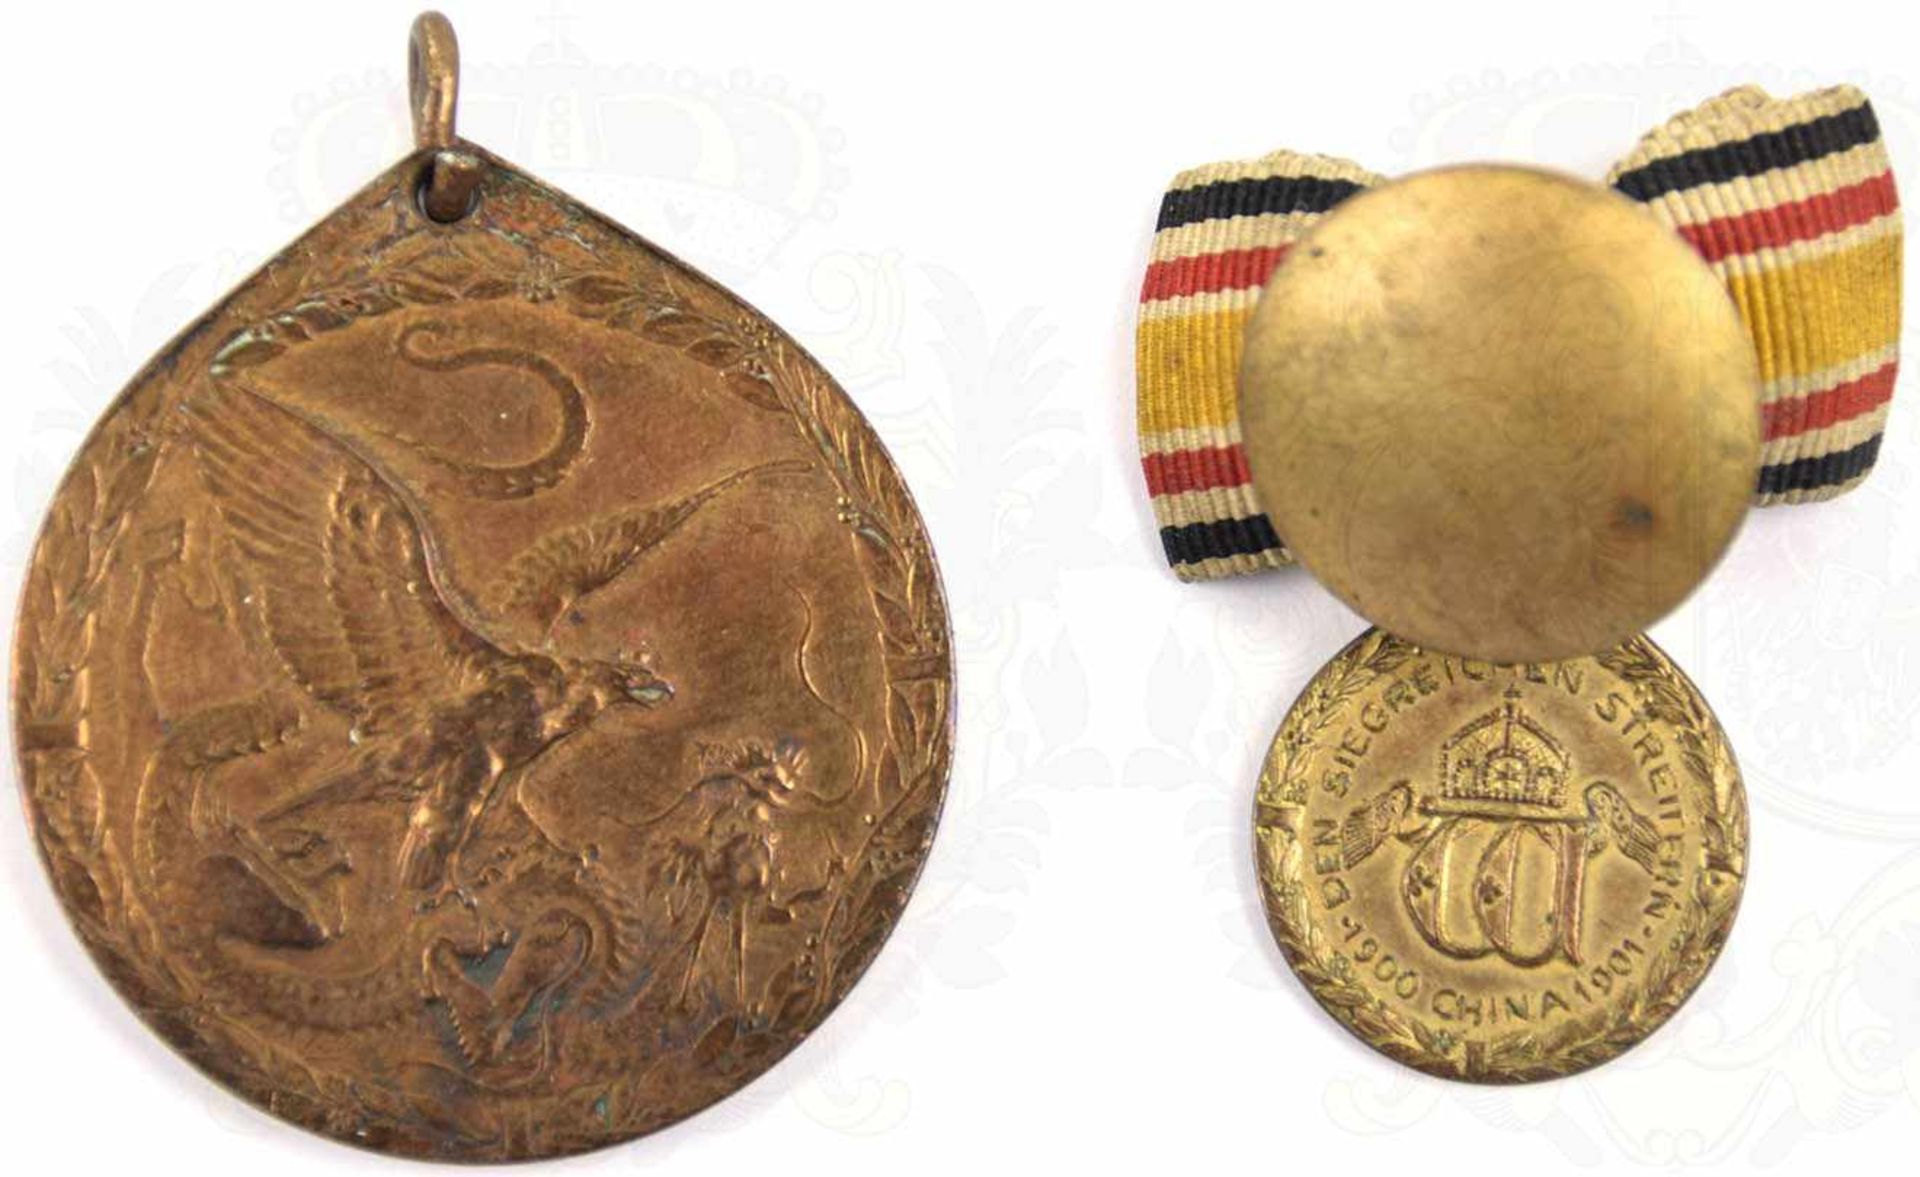 CHINA-DENKMÜNZE FÜR KÄMPFER, Bronze, m. kleiner Öse, Ring u. Band fehlen, dazu Knopflochdekoration